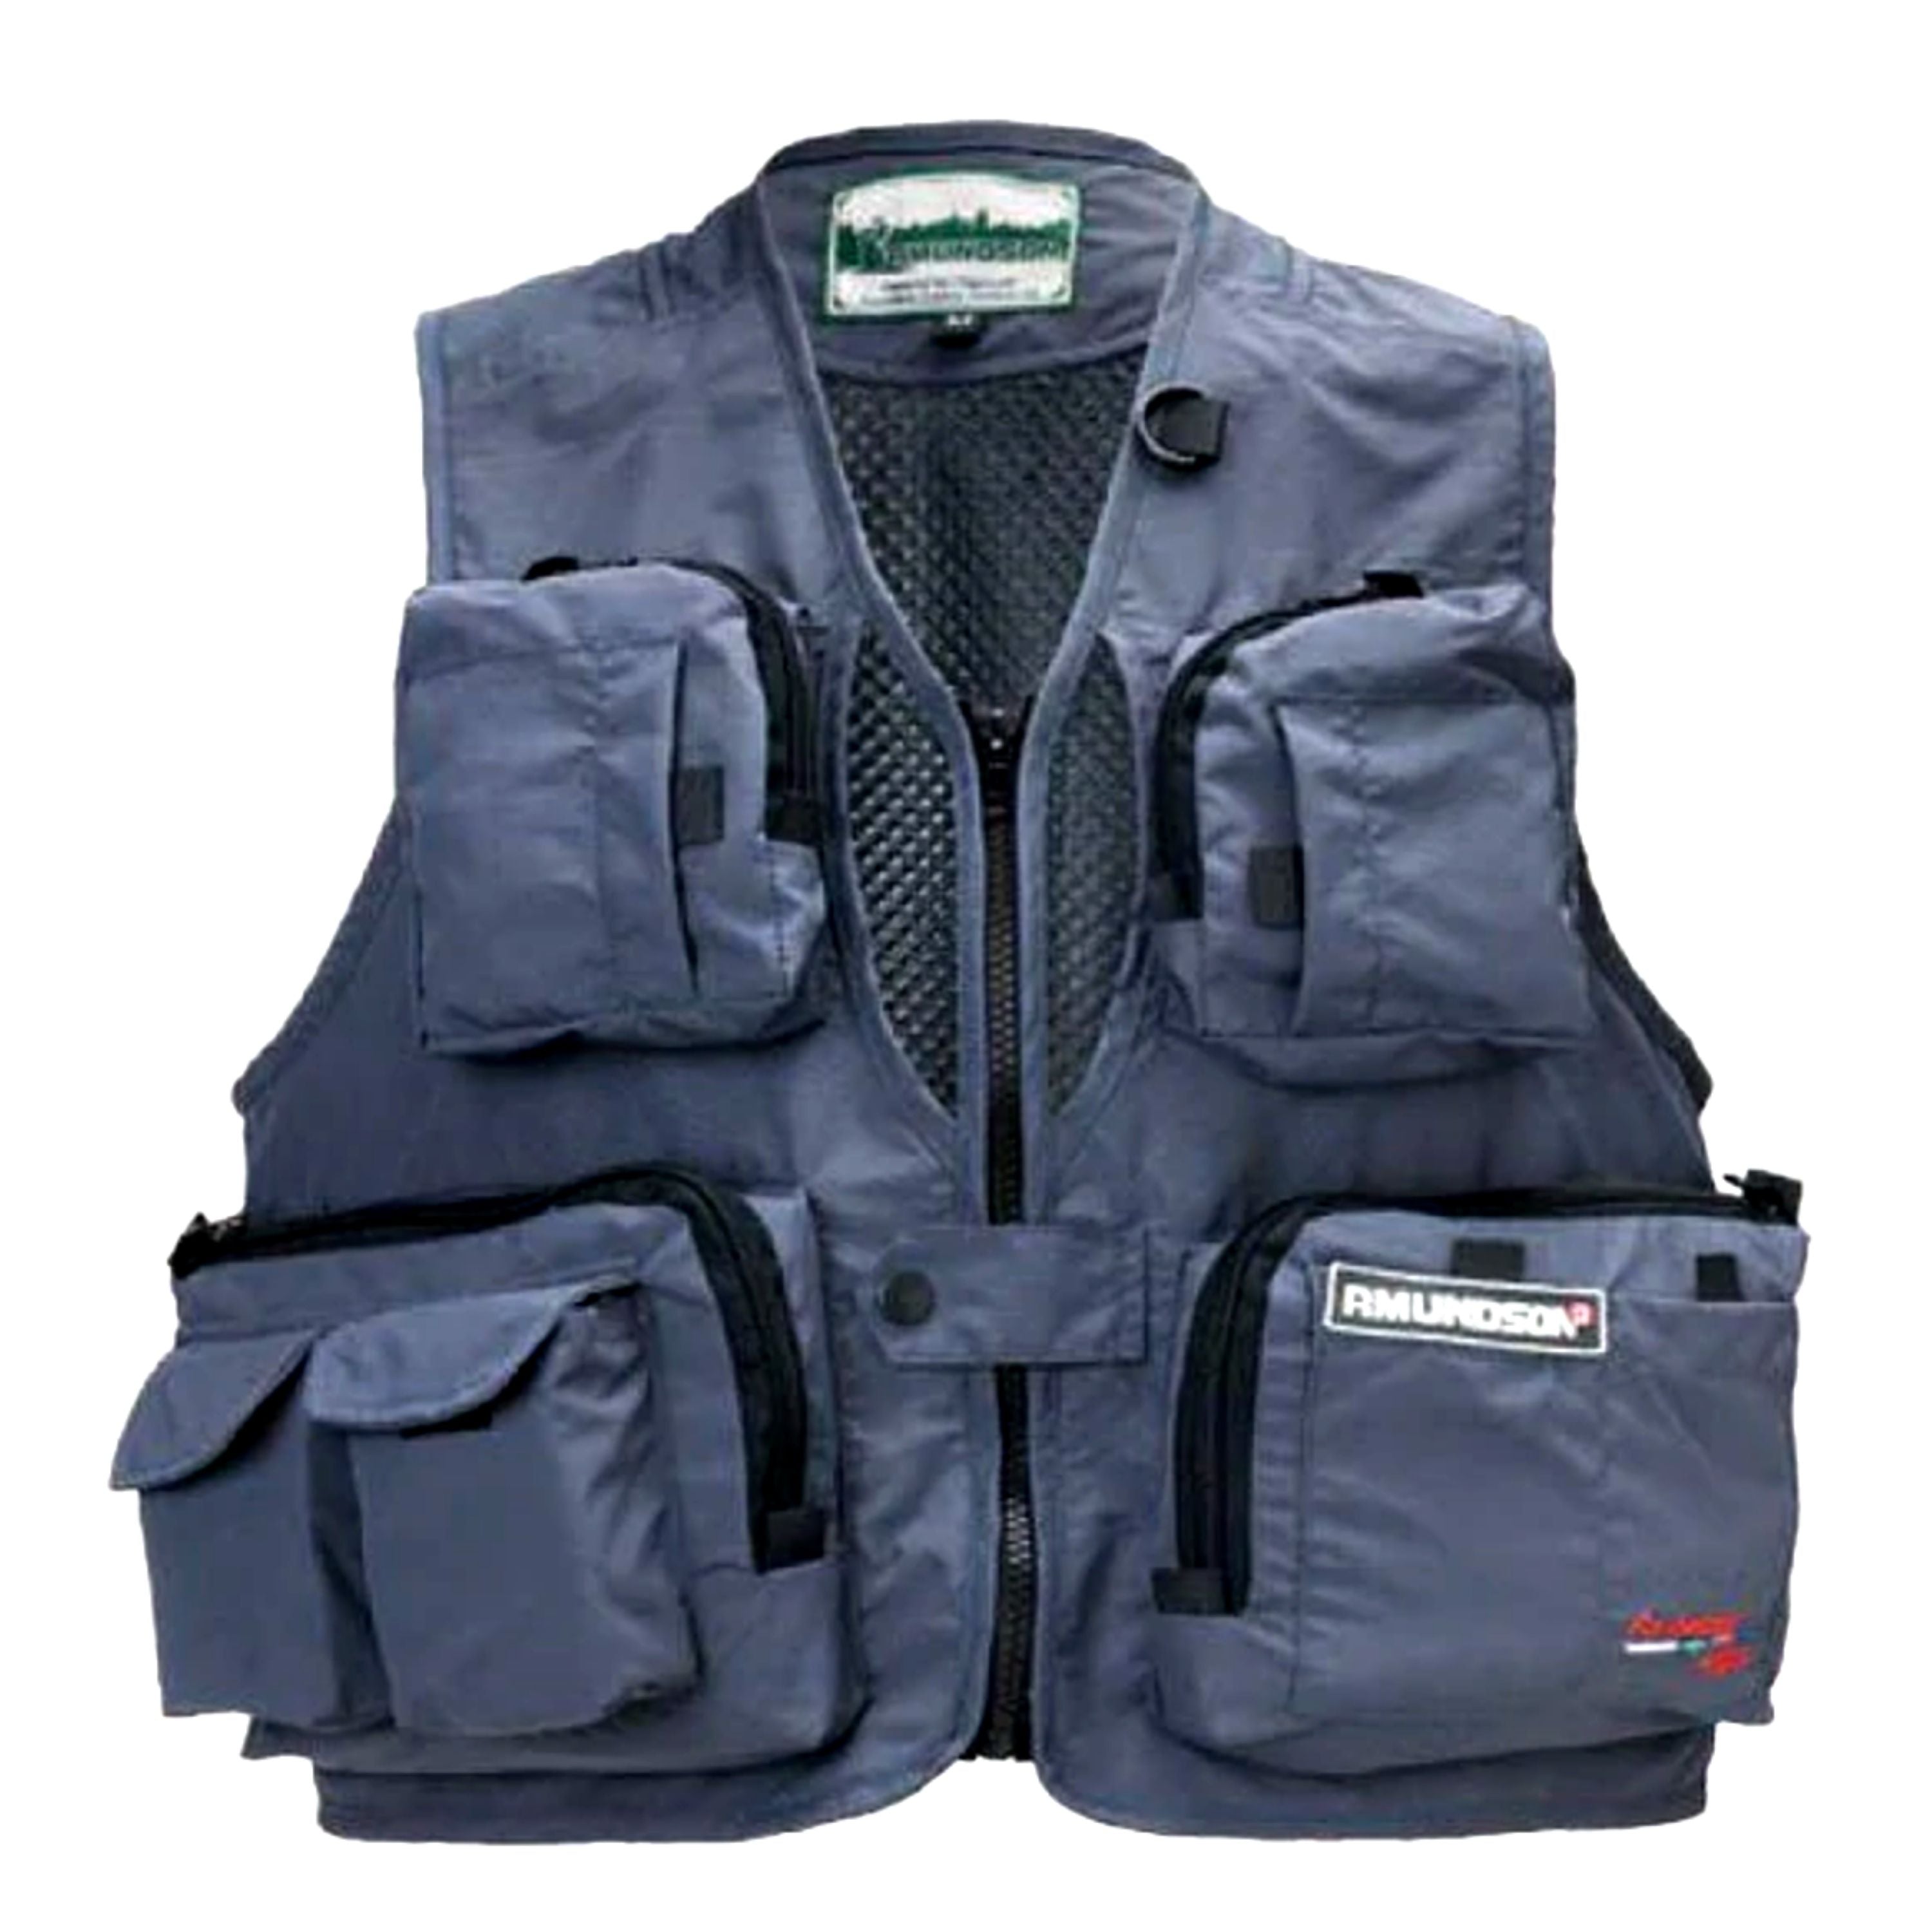 Veste de pêche 13 poches - Homme||13 pockets fishing vest - Men's